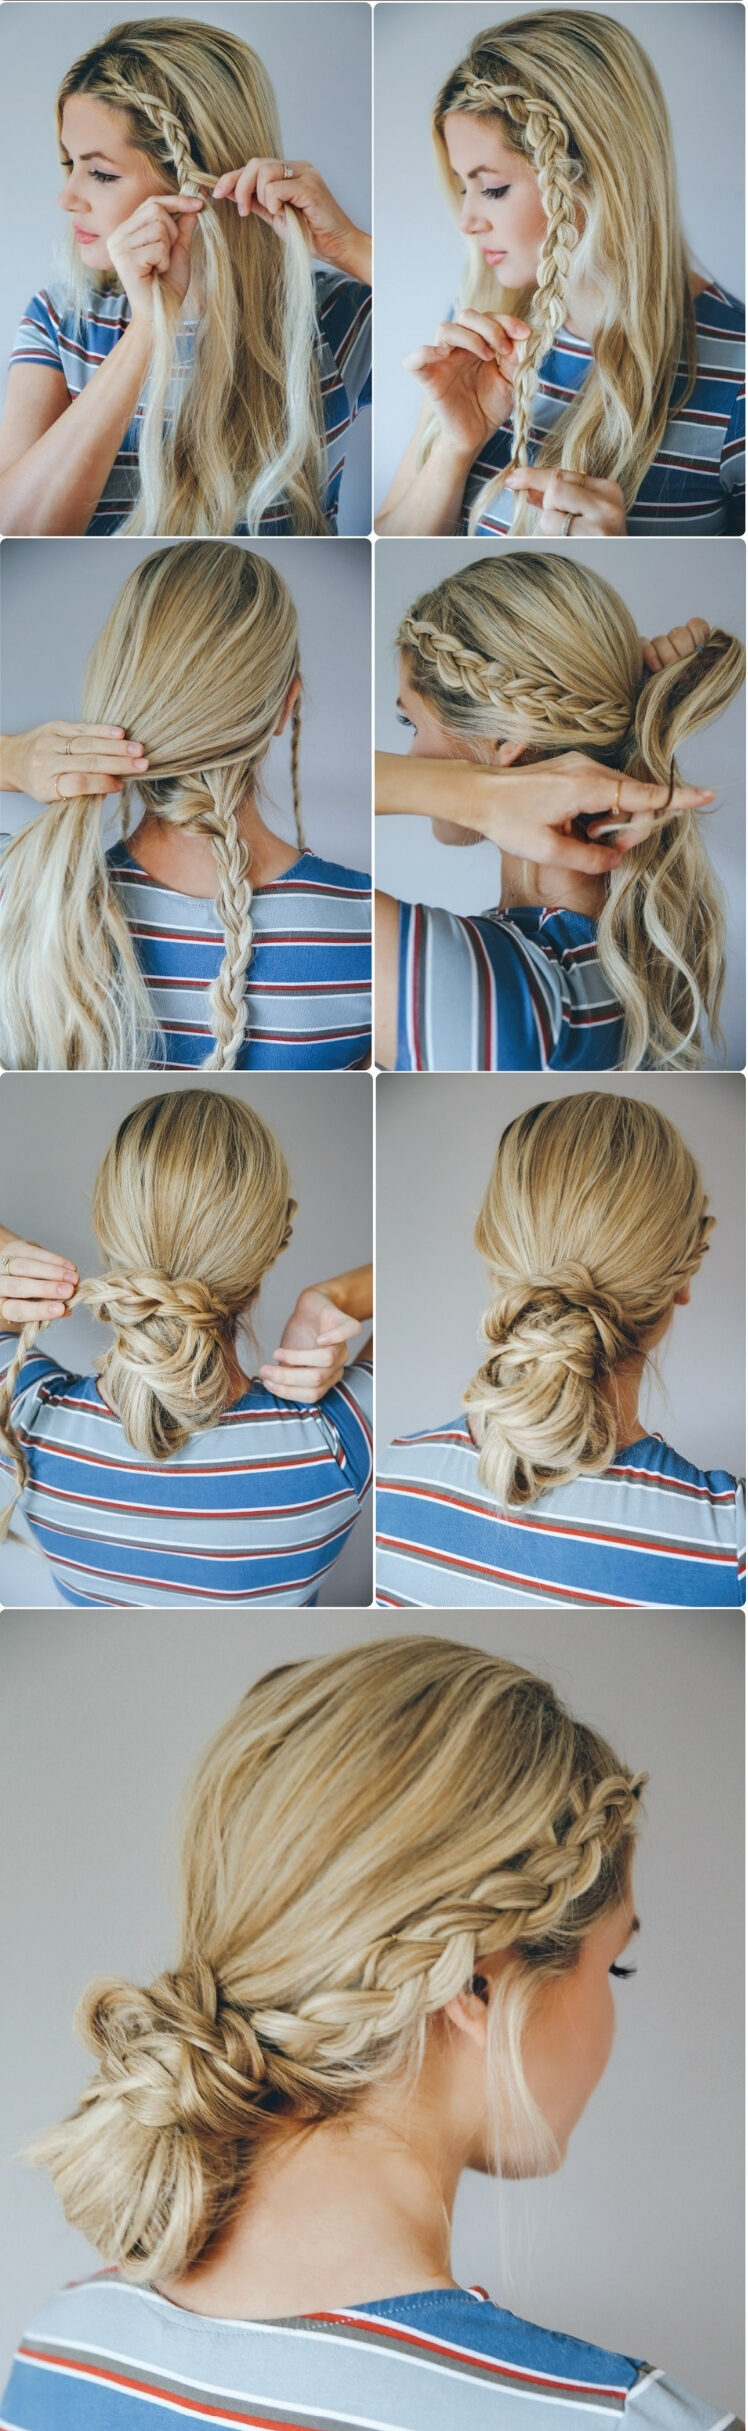 15 Gorgeous Beach Hair Ideas For Summer